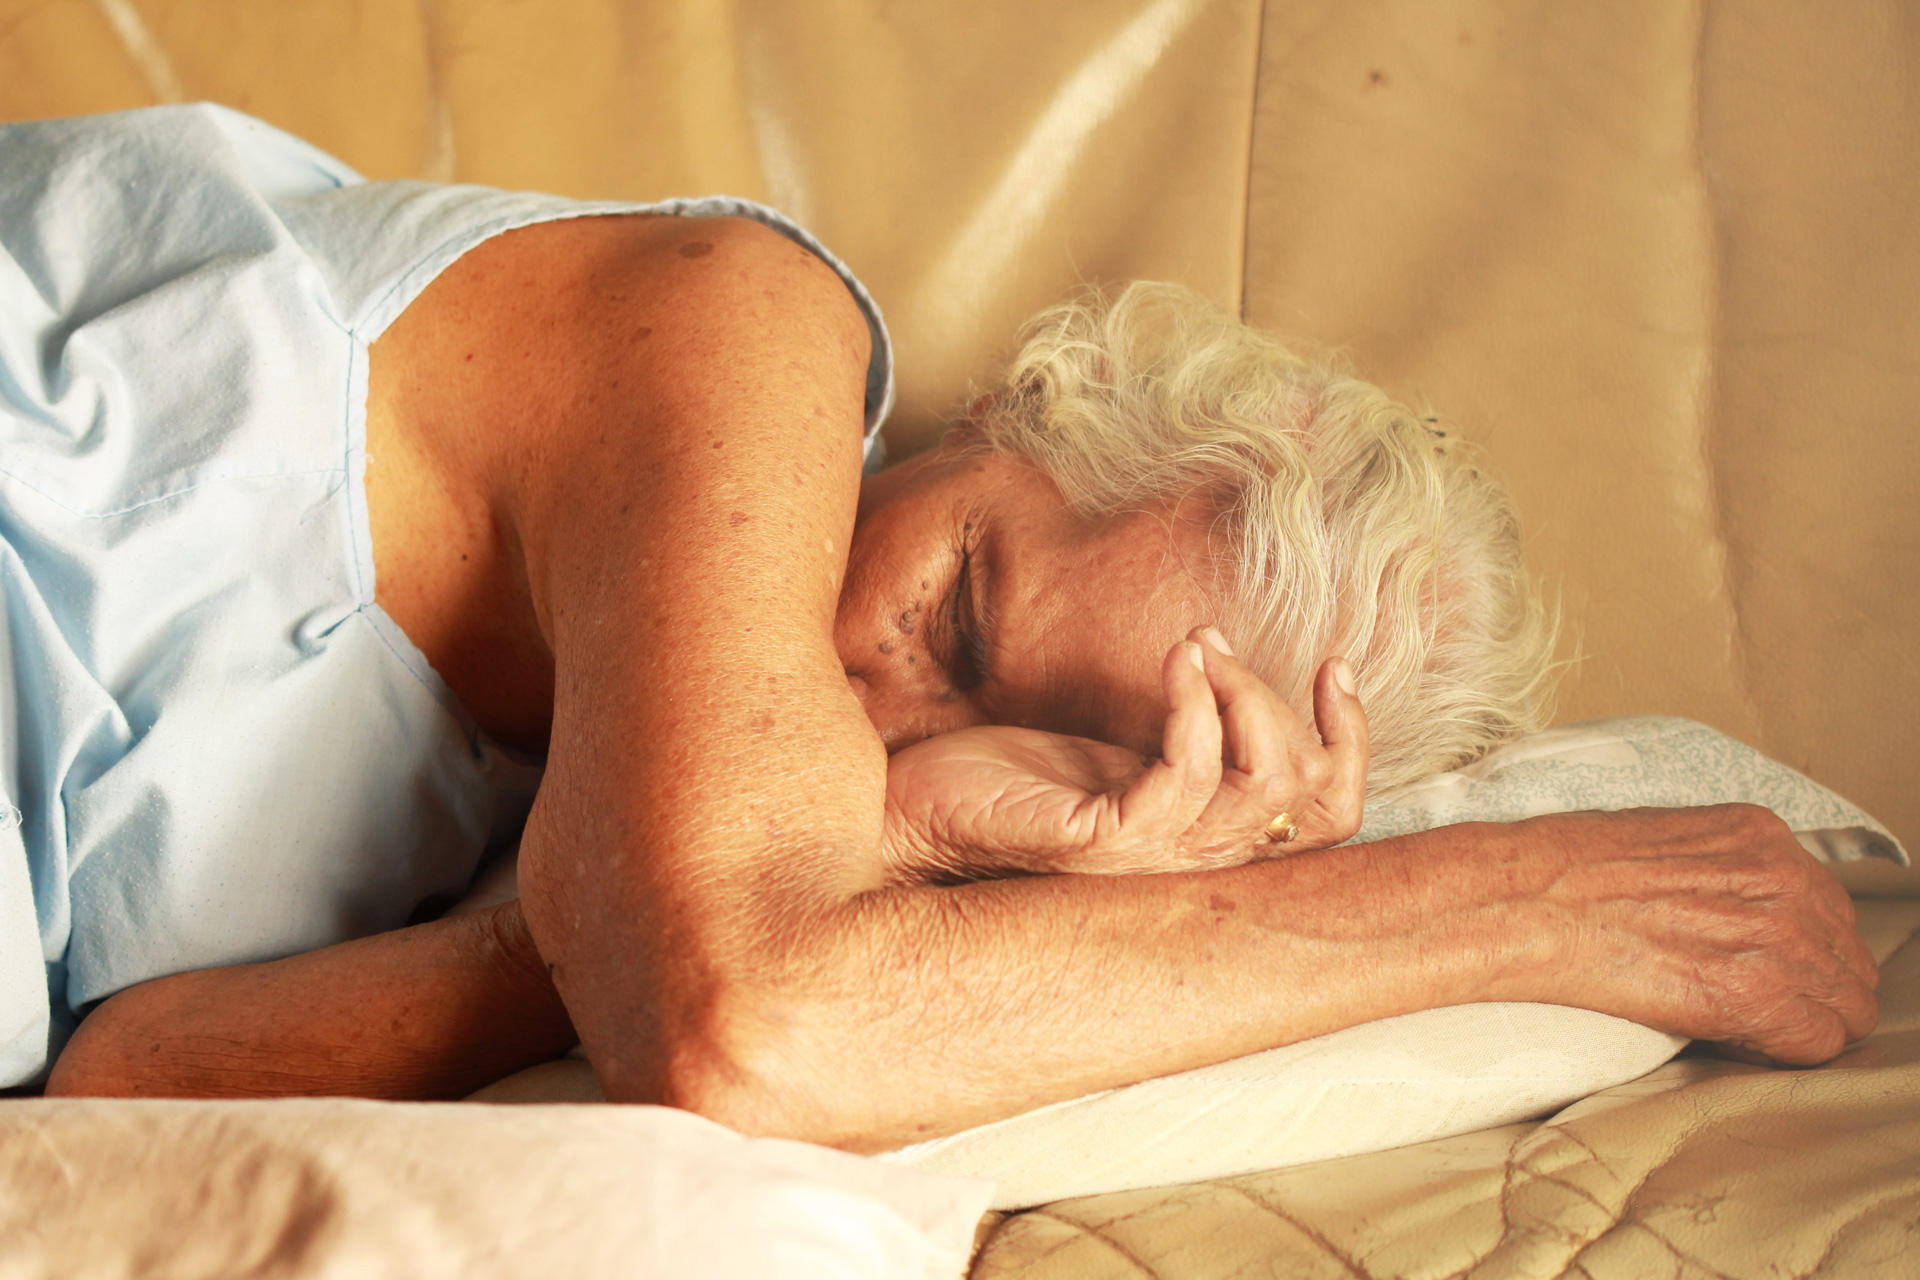 Rizikové faktory poruchy chování v REM spánku